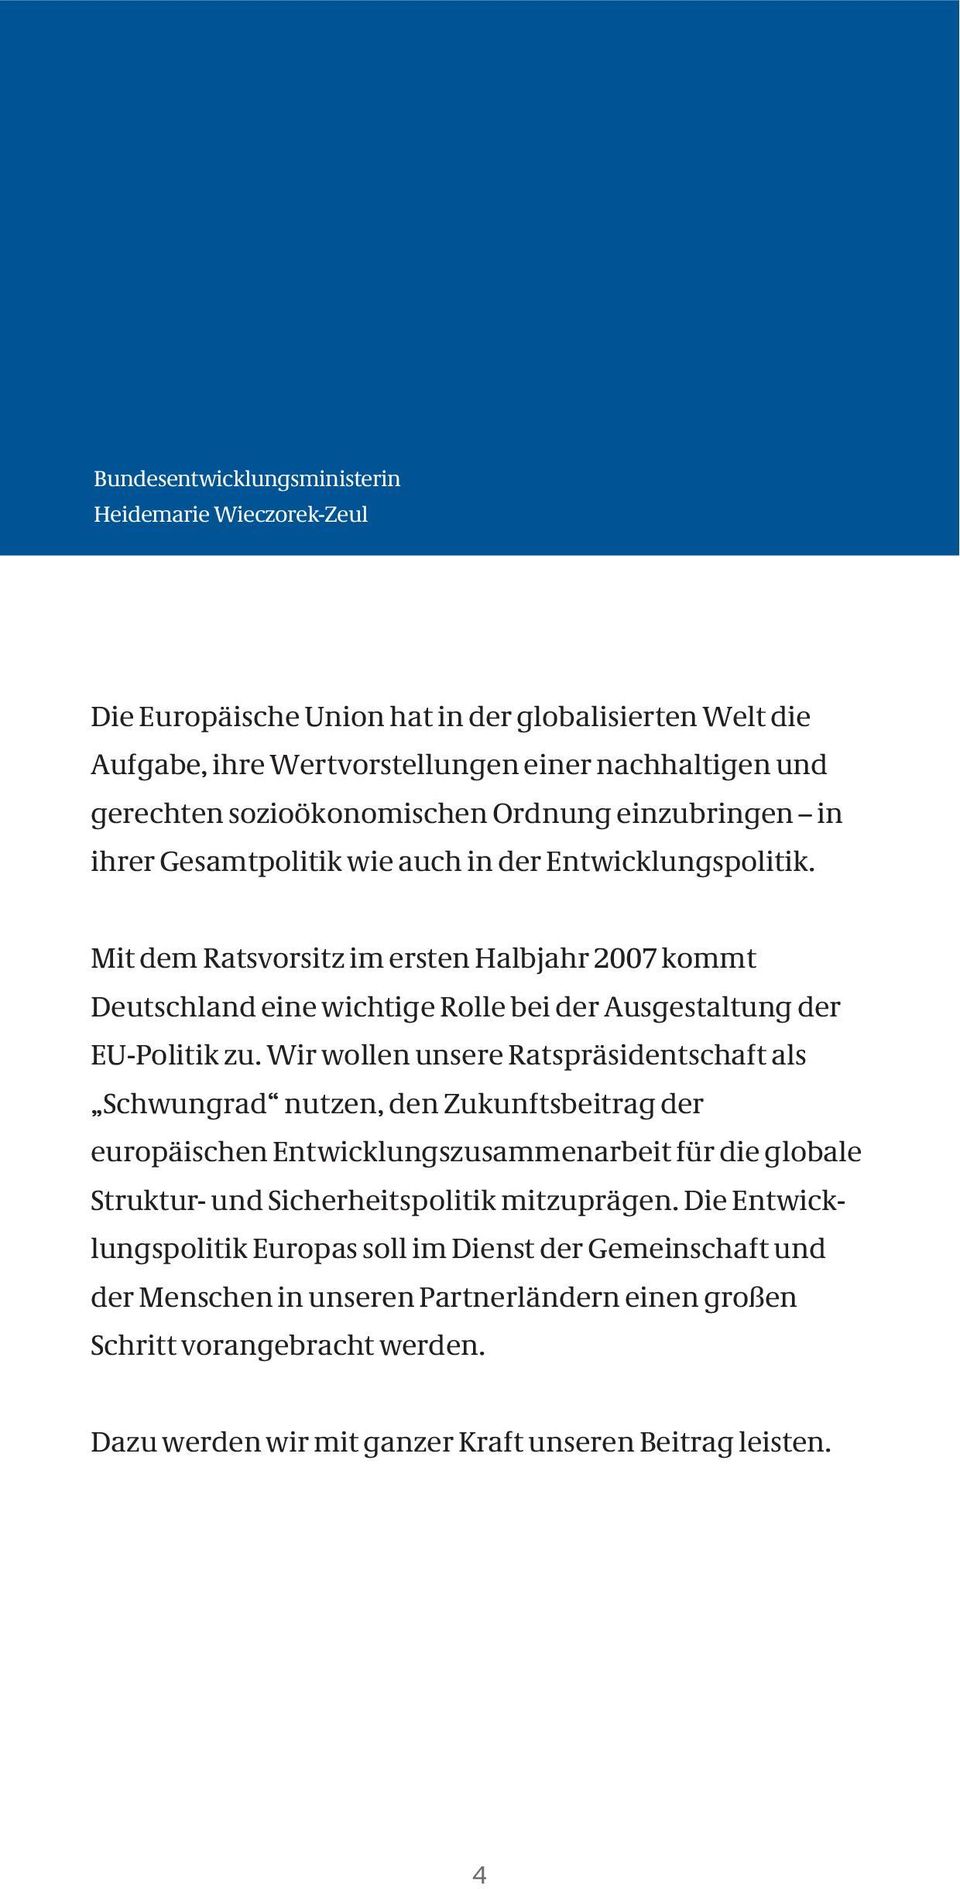 Mit dem Ratsvorsitz im ersten Halbjahr 2007 kommt Deutschland eine wichtige Rolle bei der Ausgestaltung der EU-Politik zu.